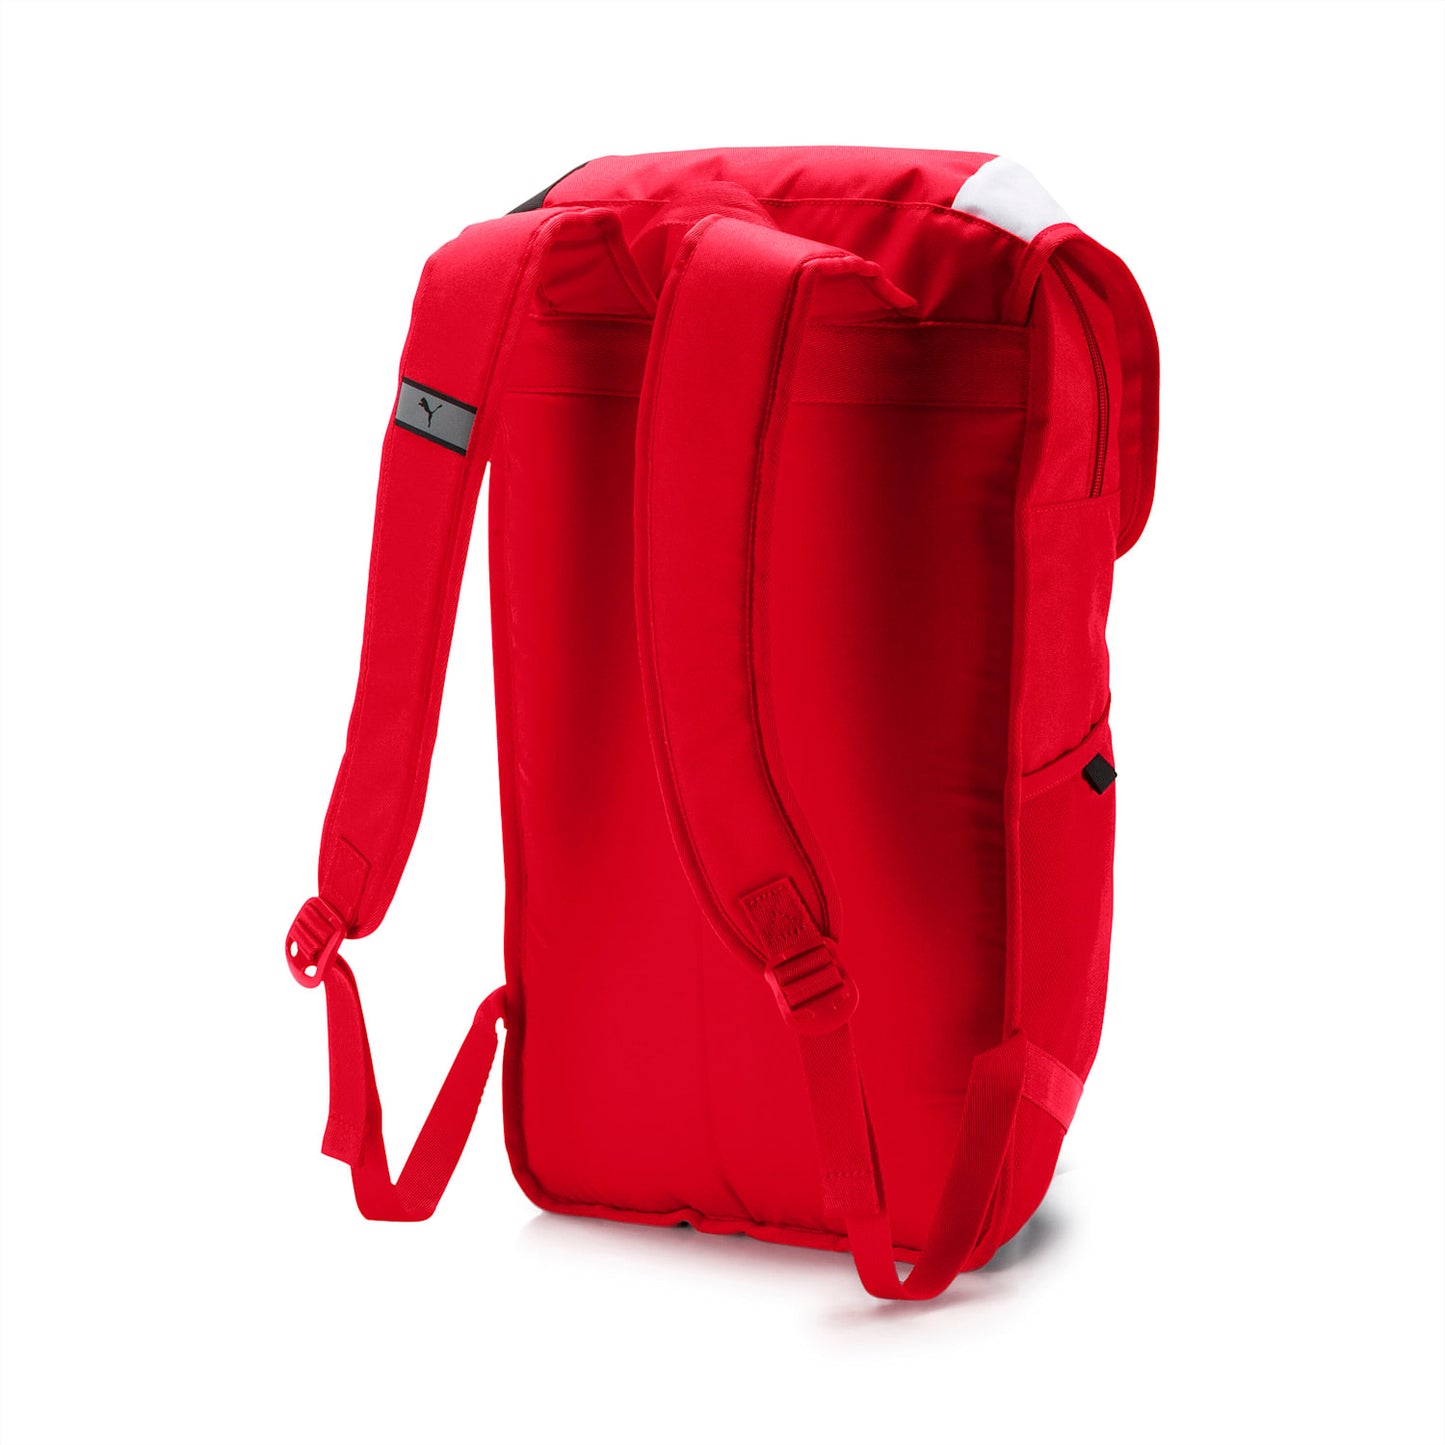 Scuderia Ferrari backpack for fans-075774 01